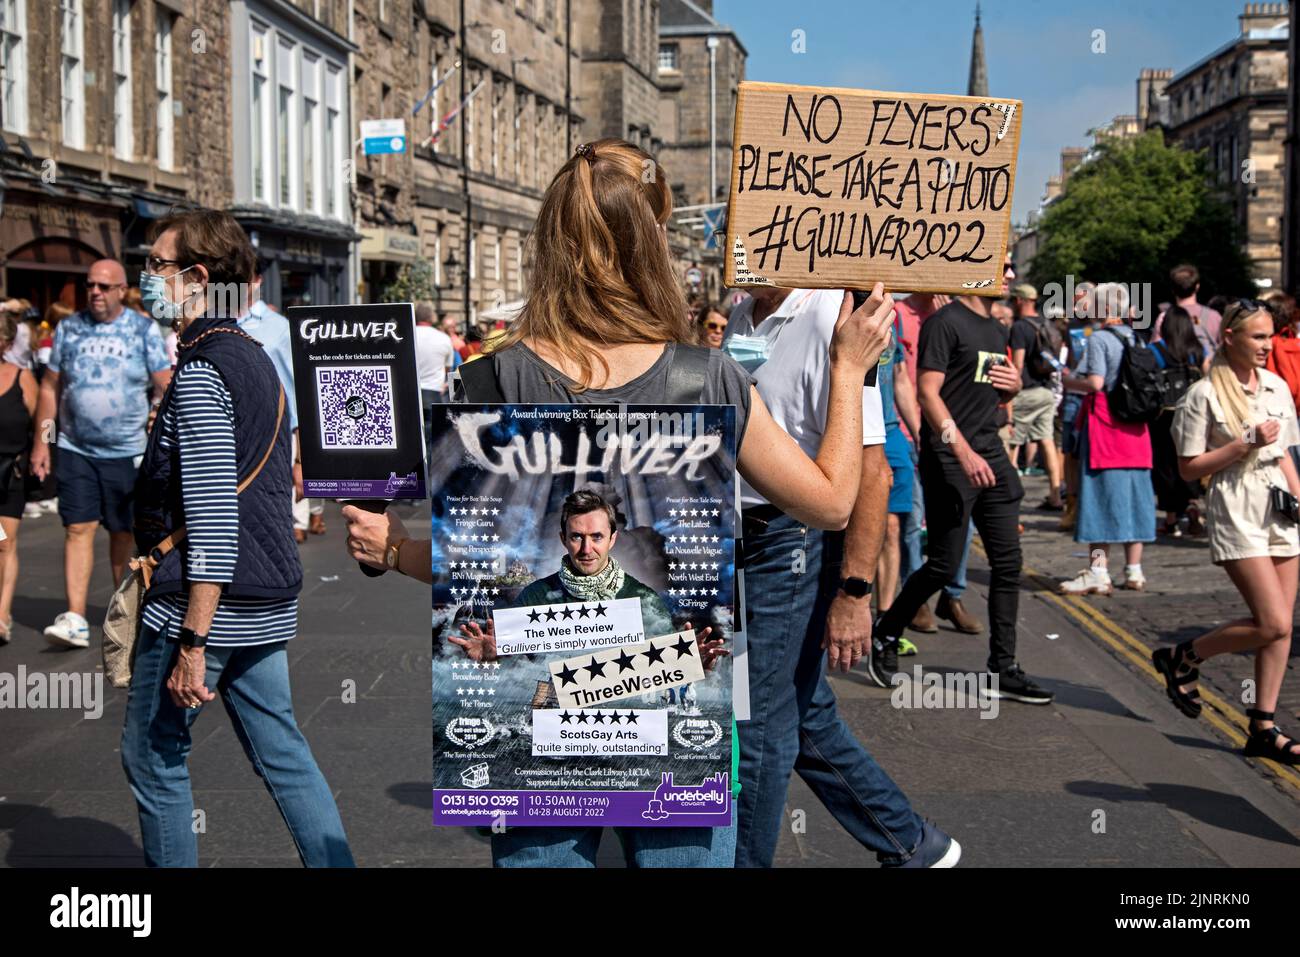 Un membro della compagnia teatrale Box tale Soup che promuove il loro spettacolo Edinburgh Fringe 'Gulliver' on the Royal Mile, Edinburgh, Scotland, UK nel 2022. Foto Stock